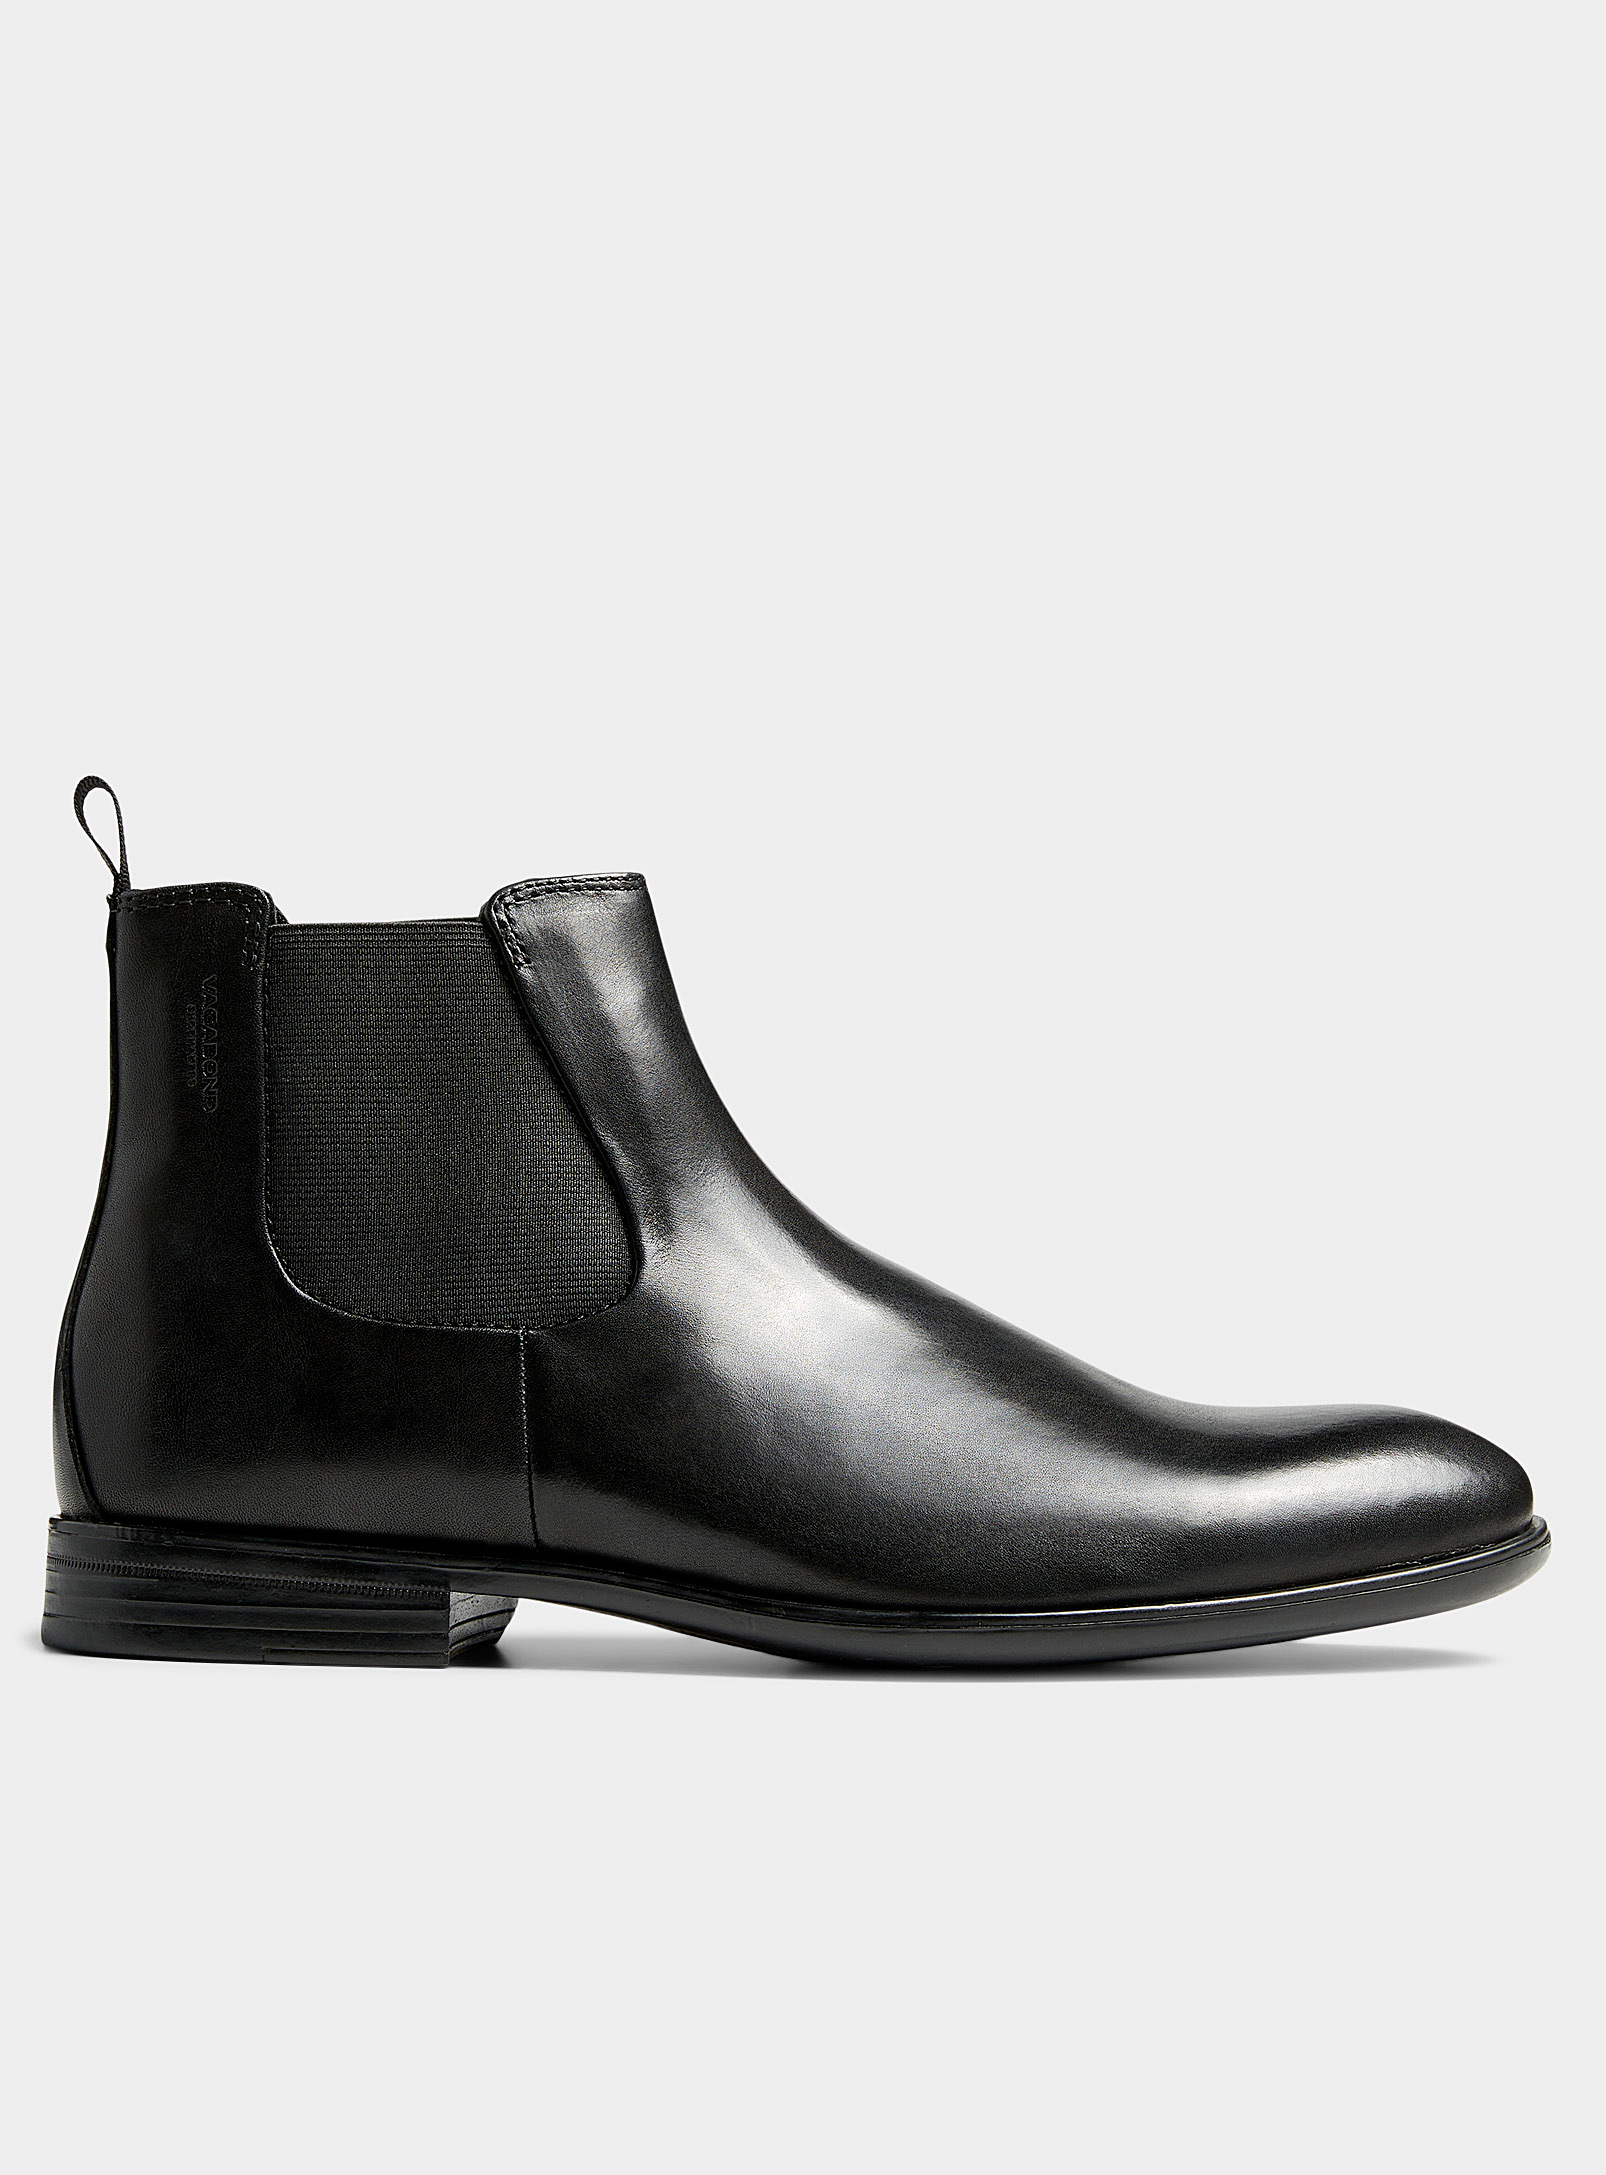 Vagabond Shoemakers - Men's Harvey Chelsea ankle boots Men